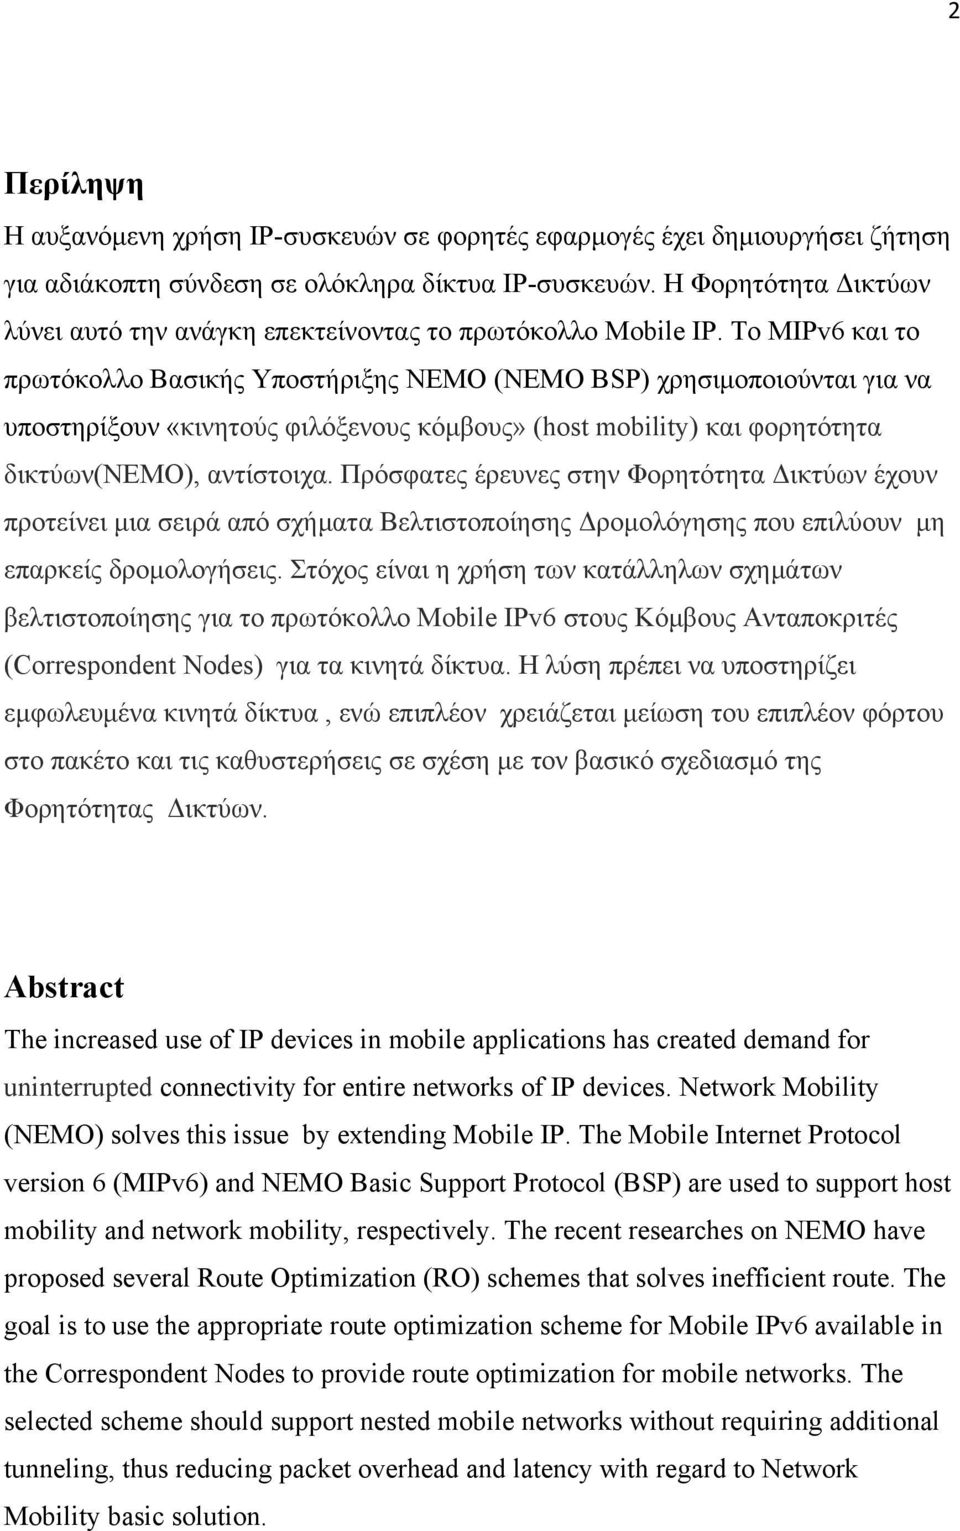 Το ΜΙΡv6 και το πρωτόκολλο Βασικής Υποστήριξης ΝΕΜΟ (NEMO BSP) χρησιμοποιούνται για να υποστηρίξουν «κινητούς φιλόξενους κόμβους» (host mobility) και φορητότητα δικτύων(νεμο), αντίστοιχα.